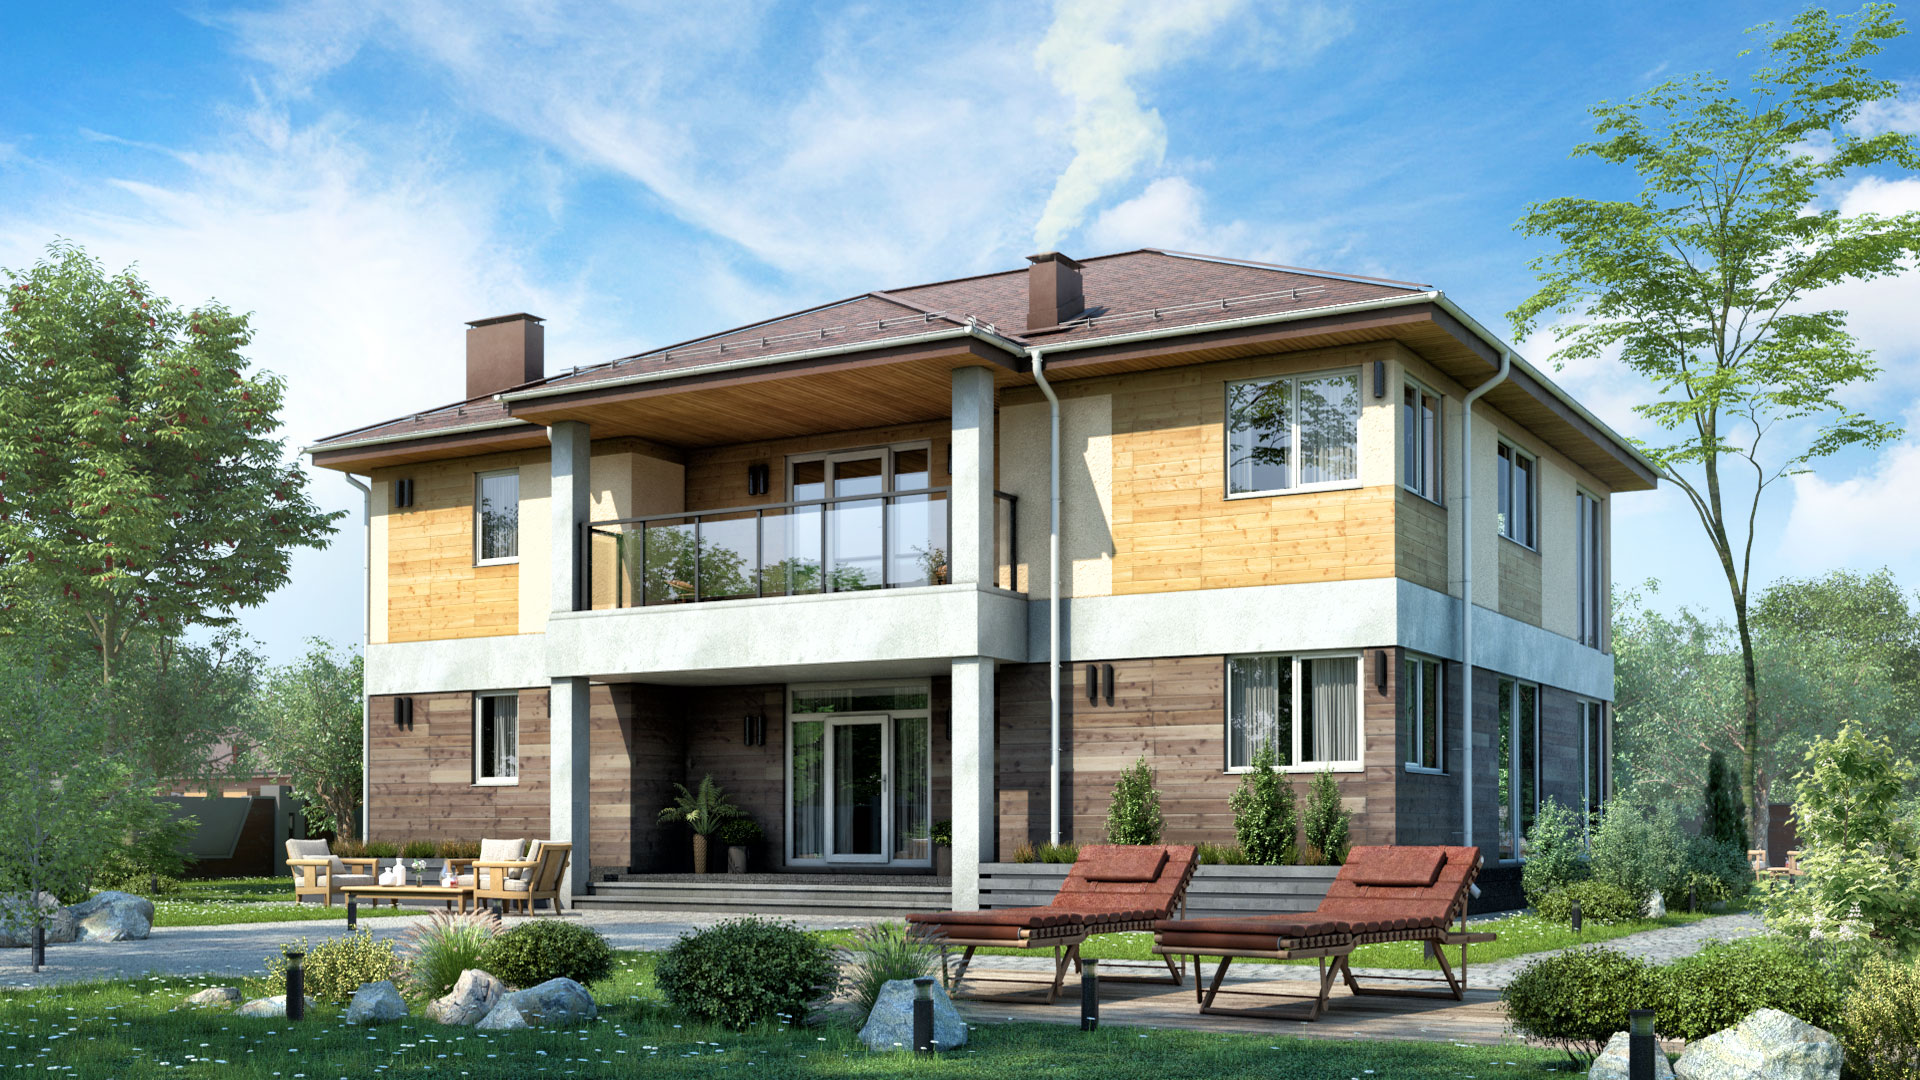 Проекты двухэтажных домов с балконом домов: готовые и типовые. Каталог содержит планировки, планы и чертежи